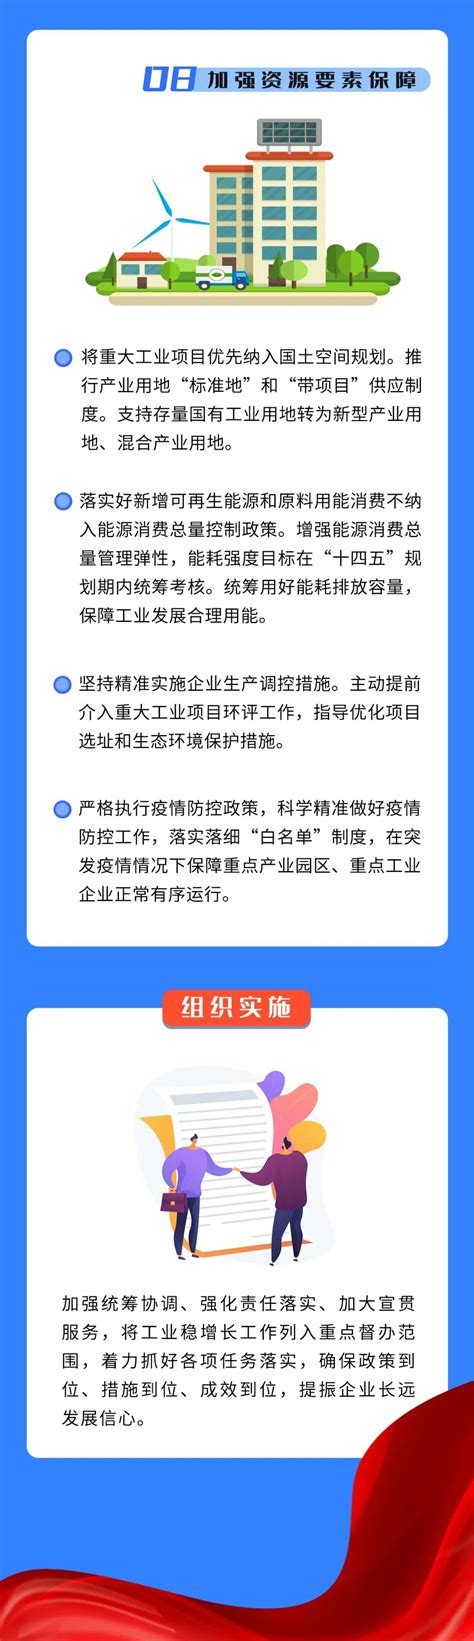 湛江市人民政府关于调整我市最低工资标准的通知